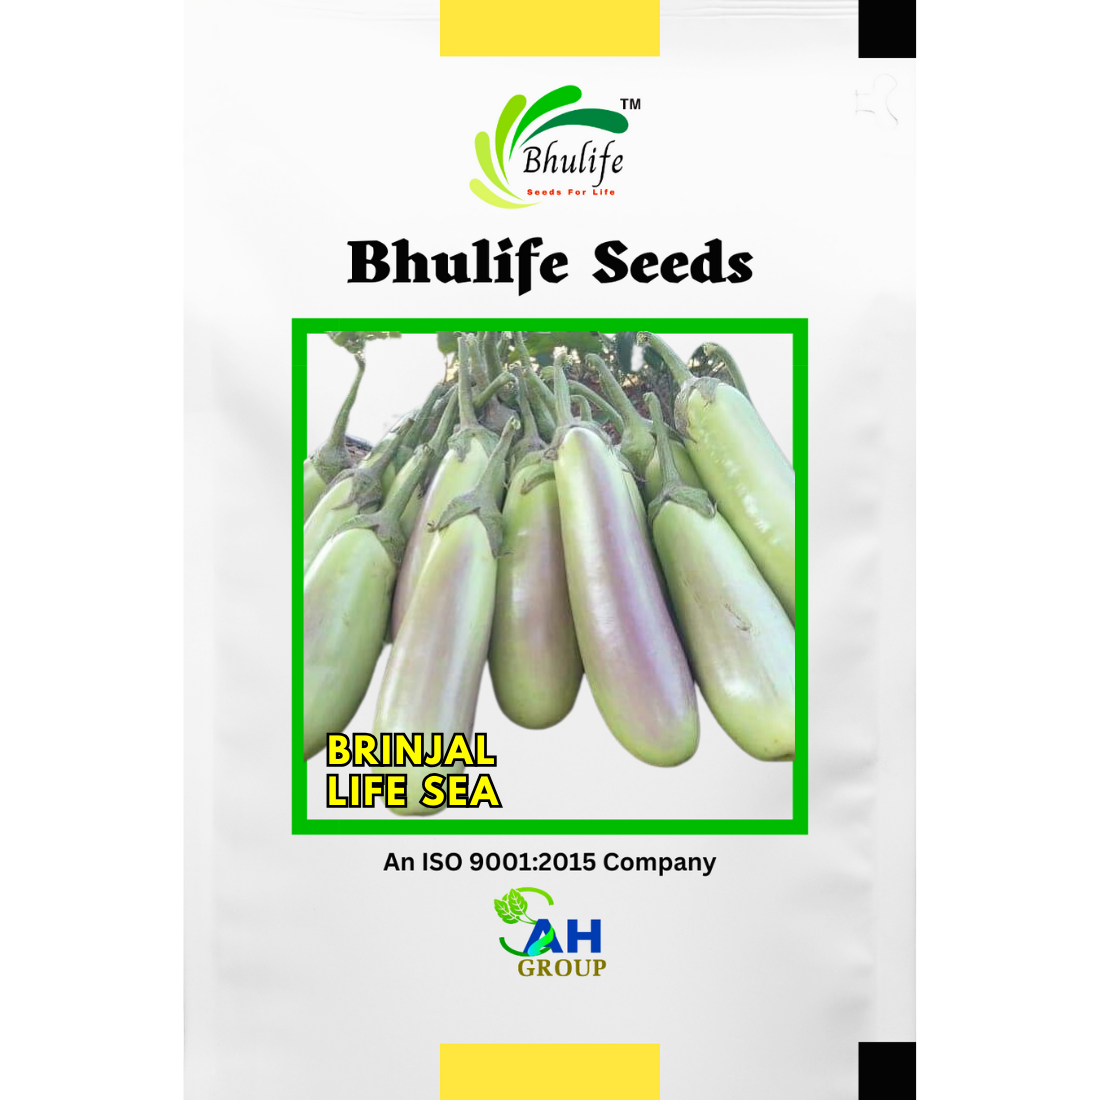 Bhulife Seeds Brinjal Seeds Life Sea